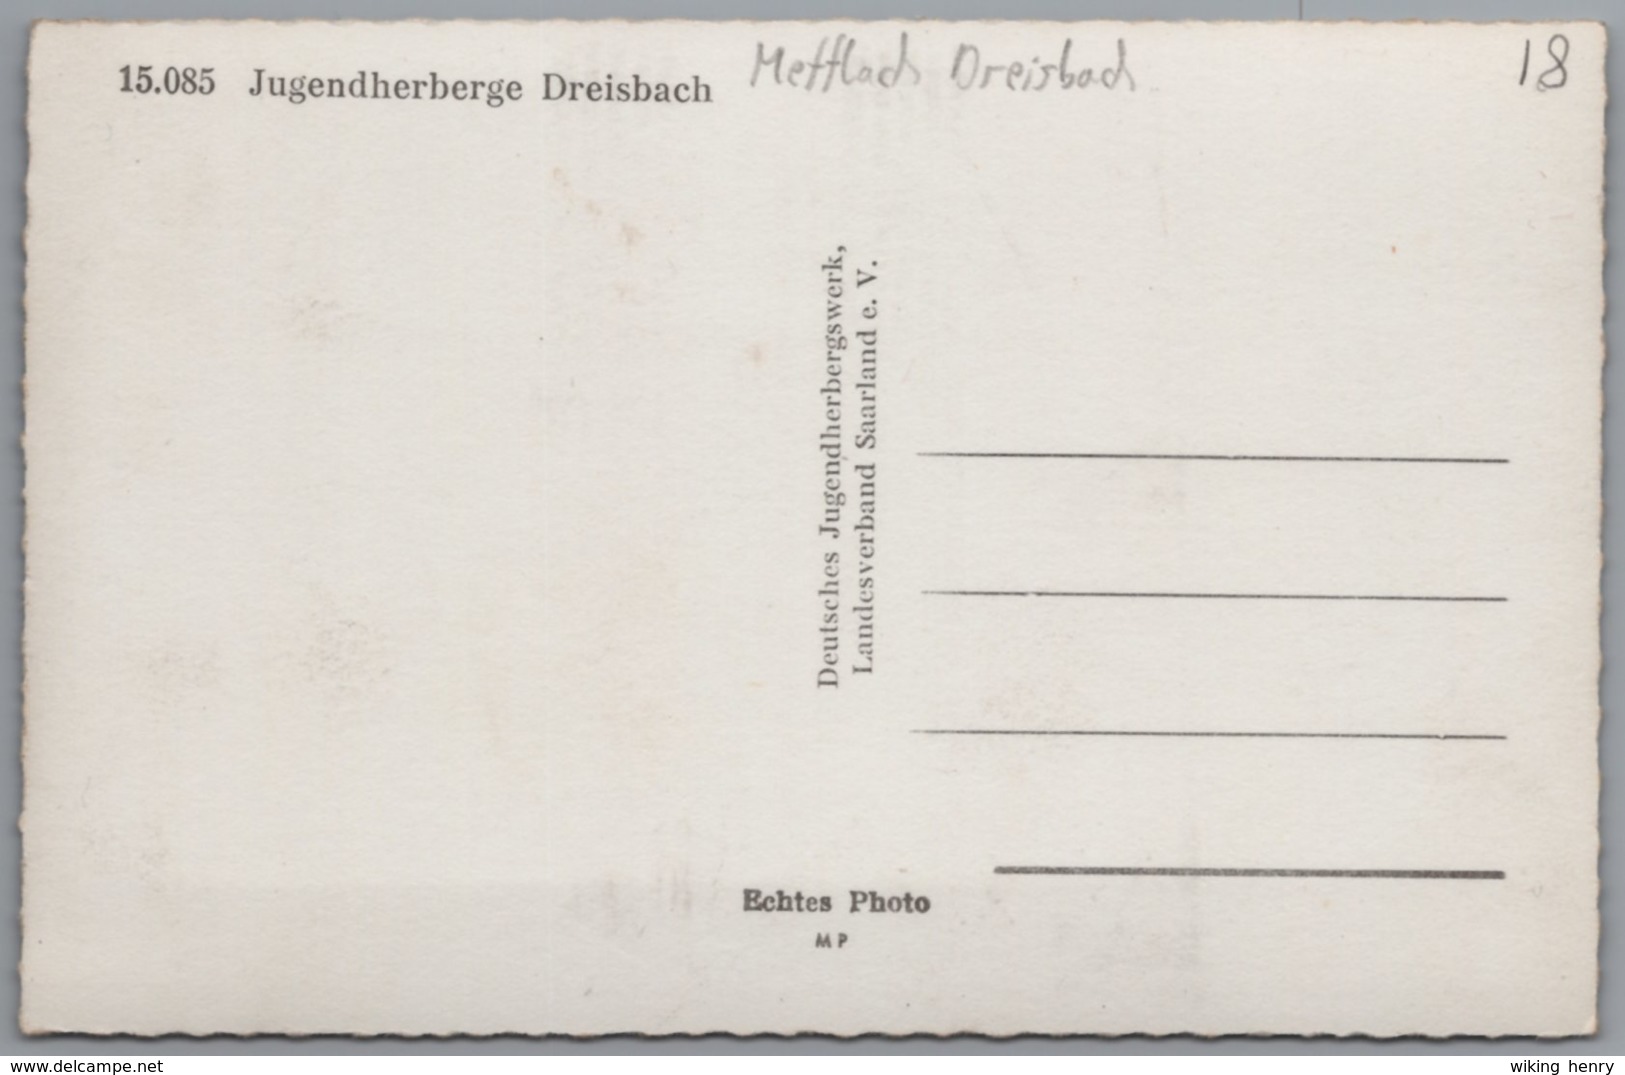 Mettlach Dreisbach - S/w Jugendherberge - Kreis Merzig-Wadern